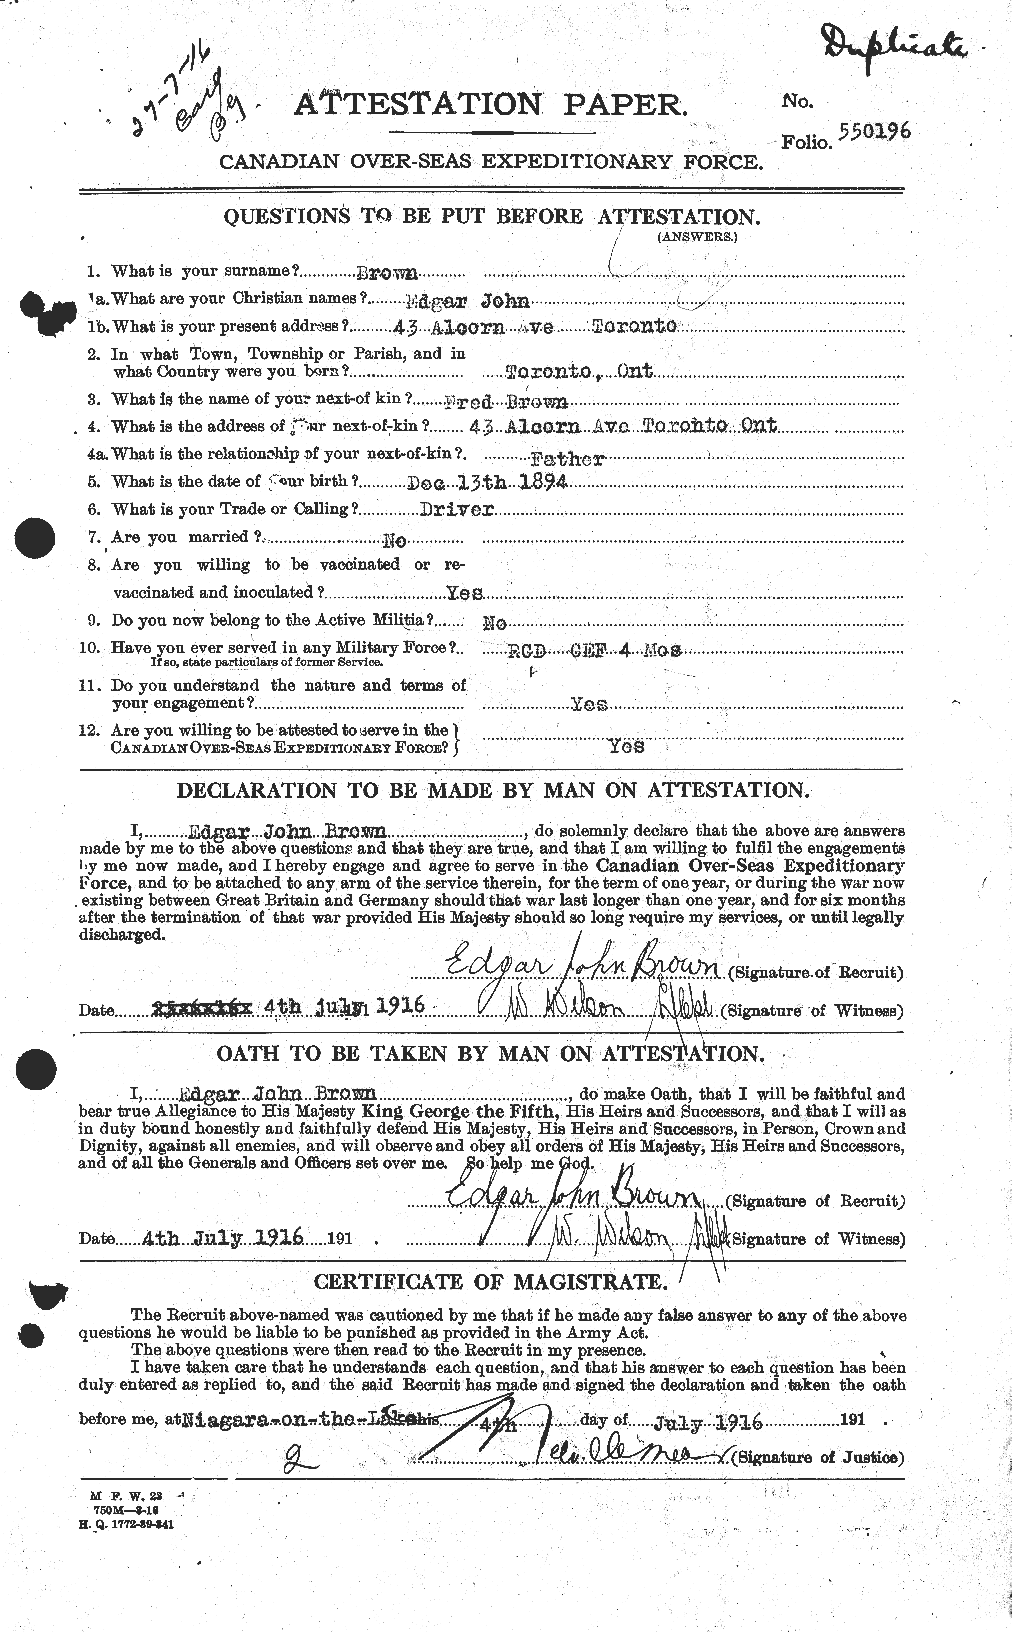 Dossiers du Personnel de la Première Guerre mondiale - CEC 263318a